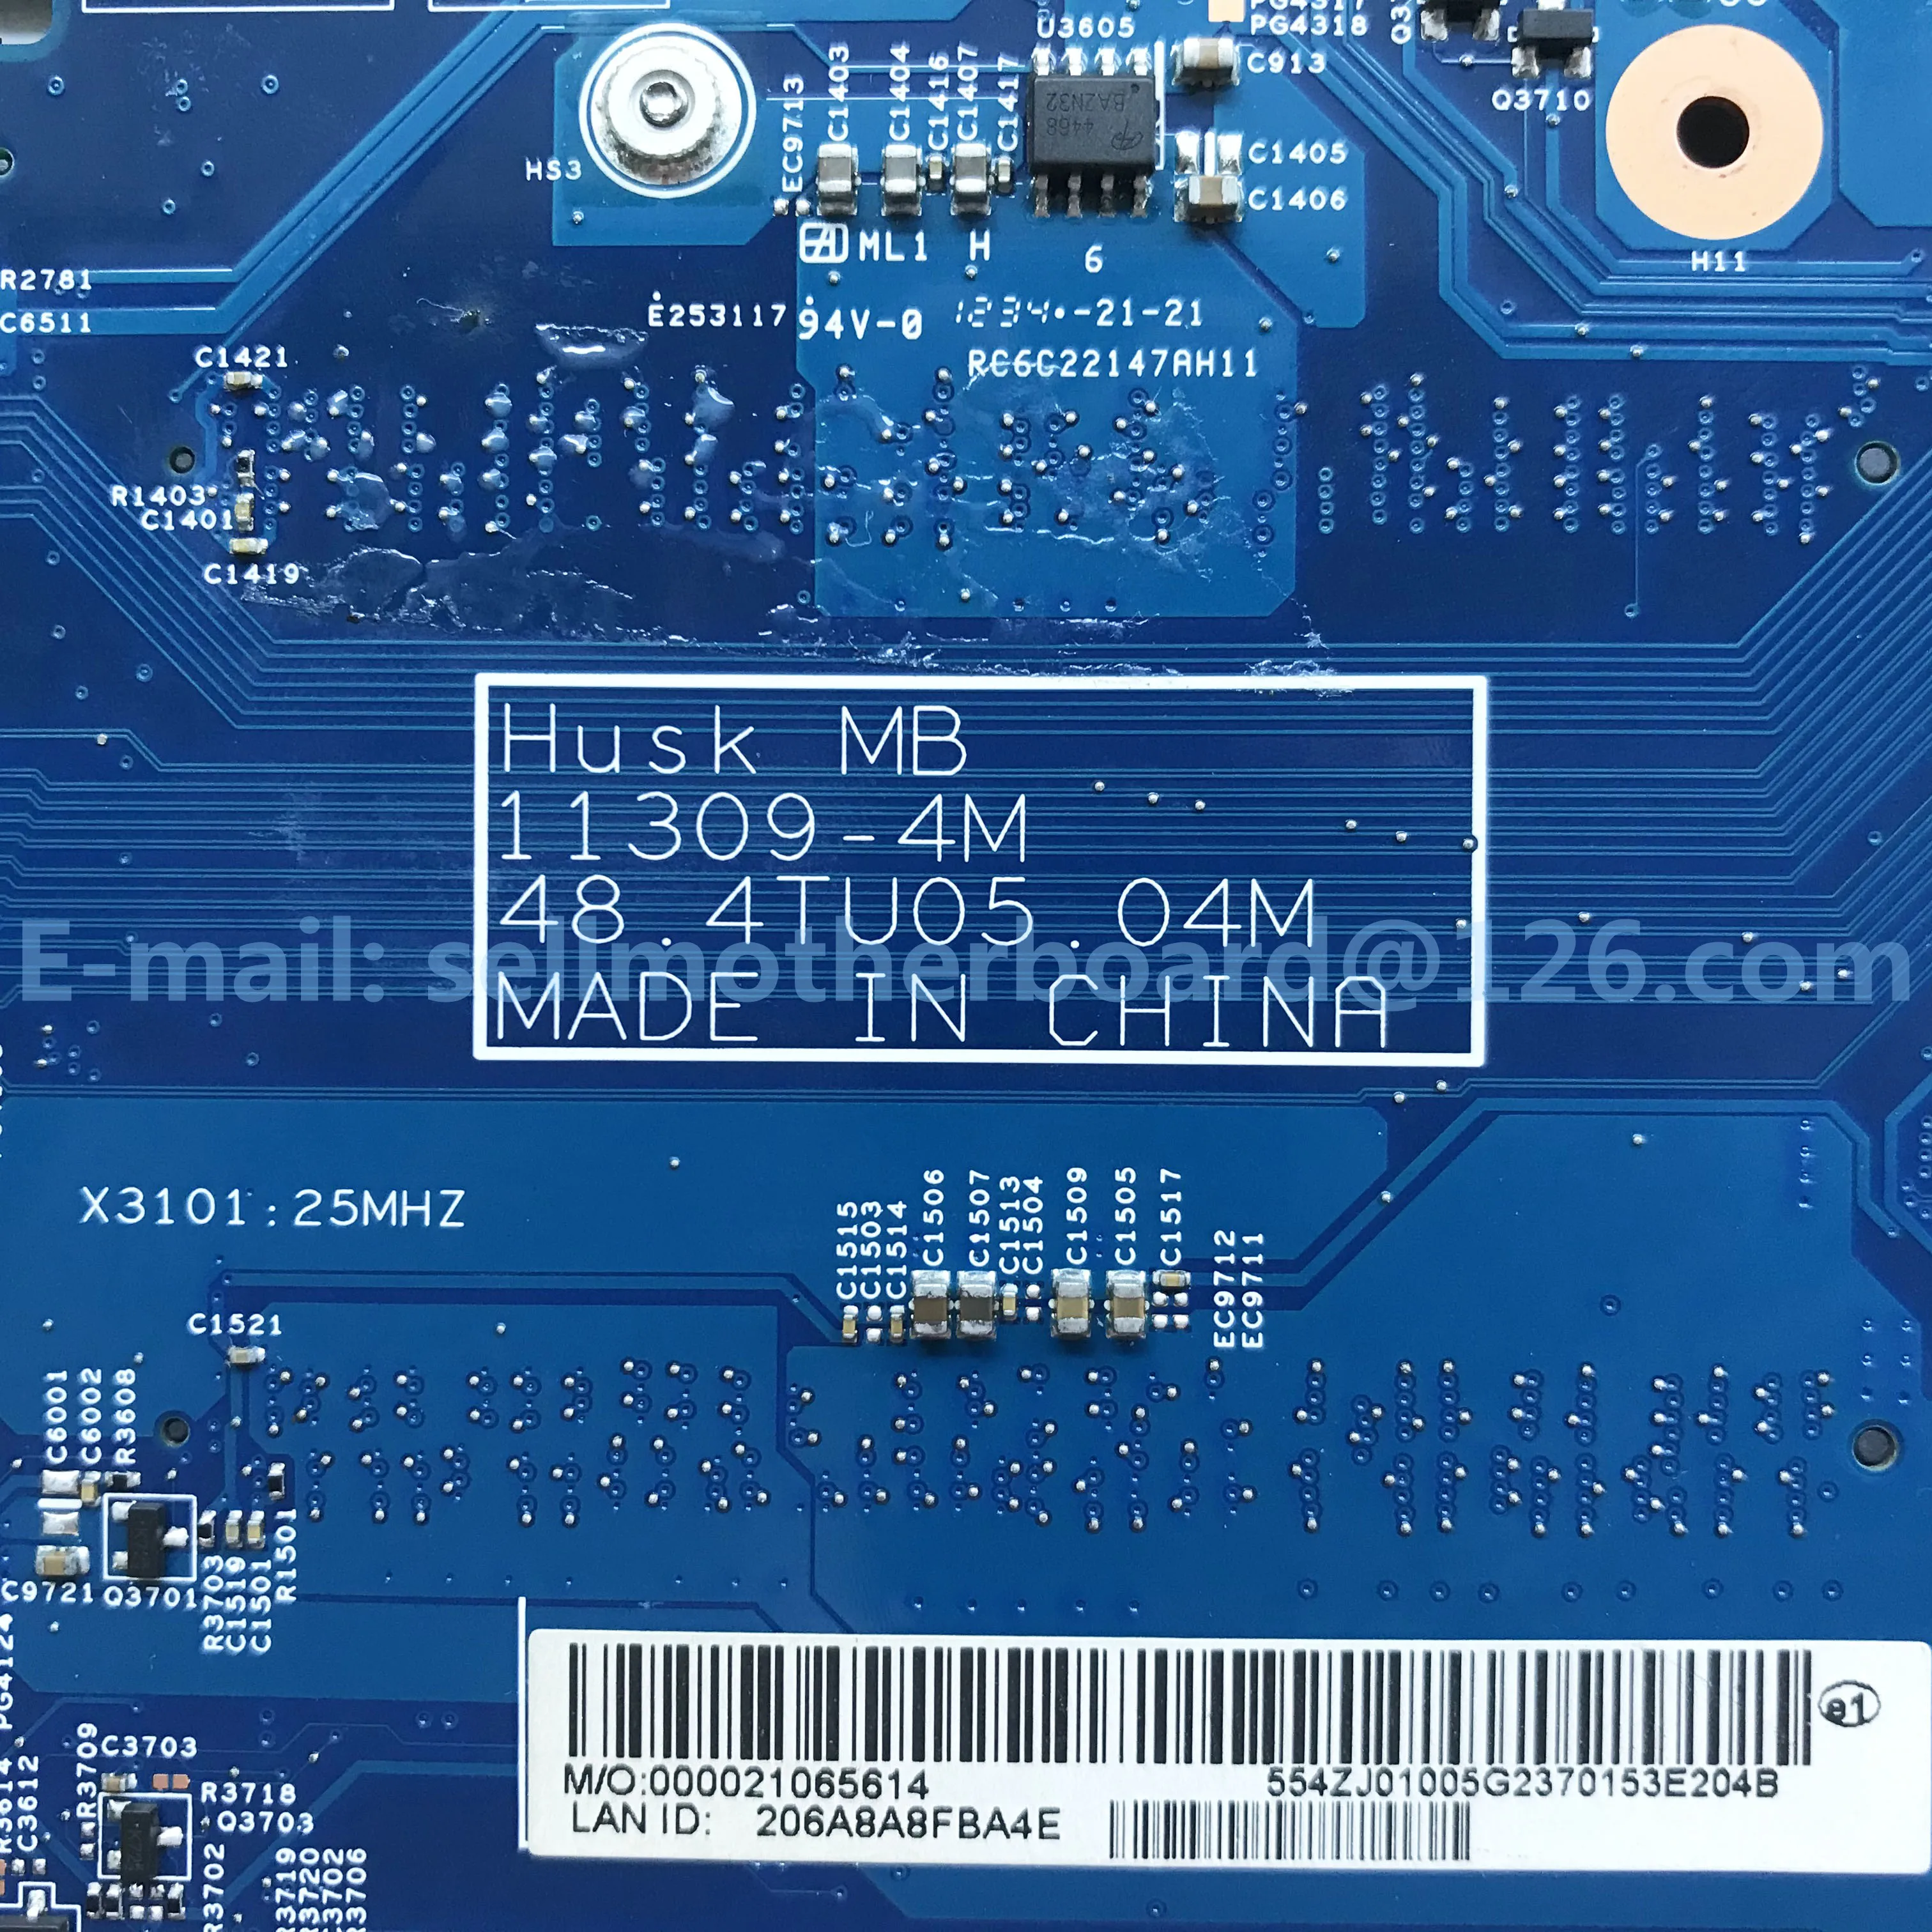 Za Acer Aspire V5-571 Prenosni računalnik z Matično ploščo Z i5-3317u HM77 NBM4911001 11309-4M 48.4TU05.04M DDR3 Testirani Hitro Ladjo